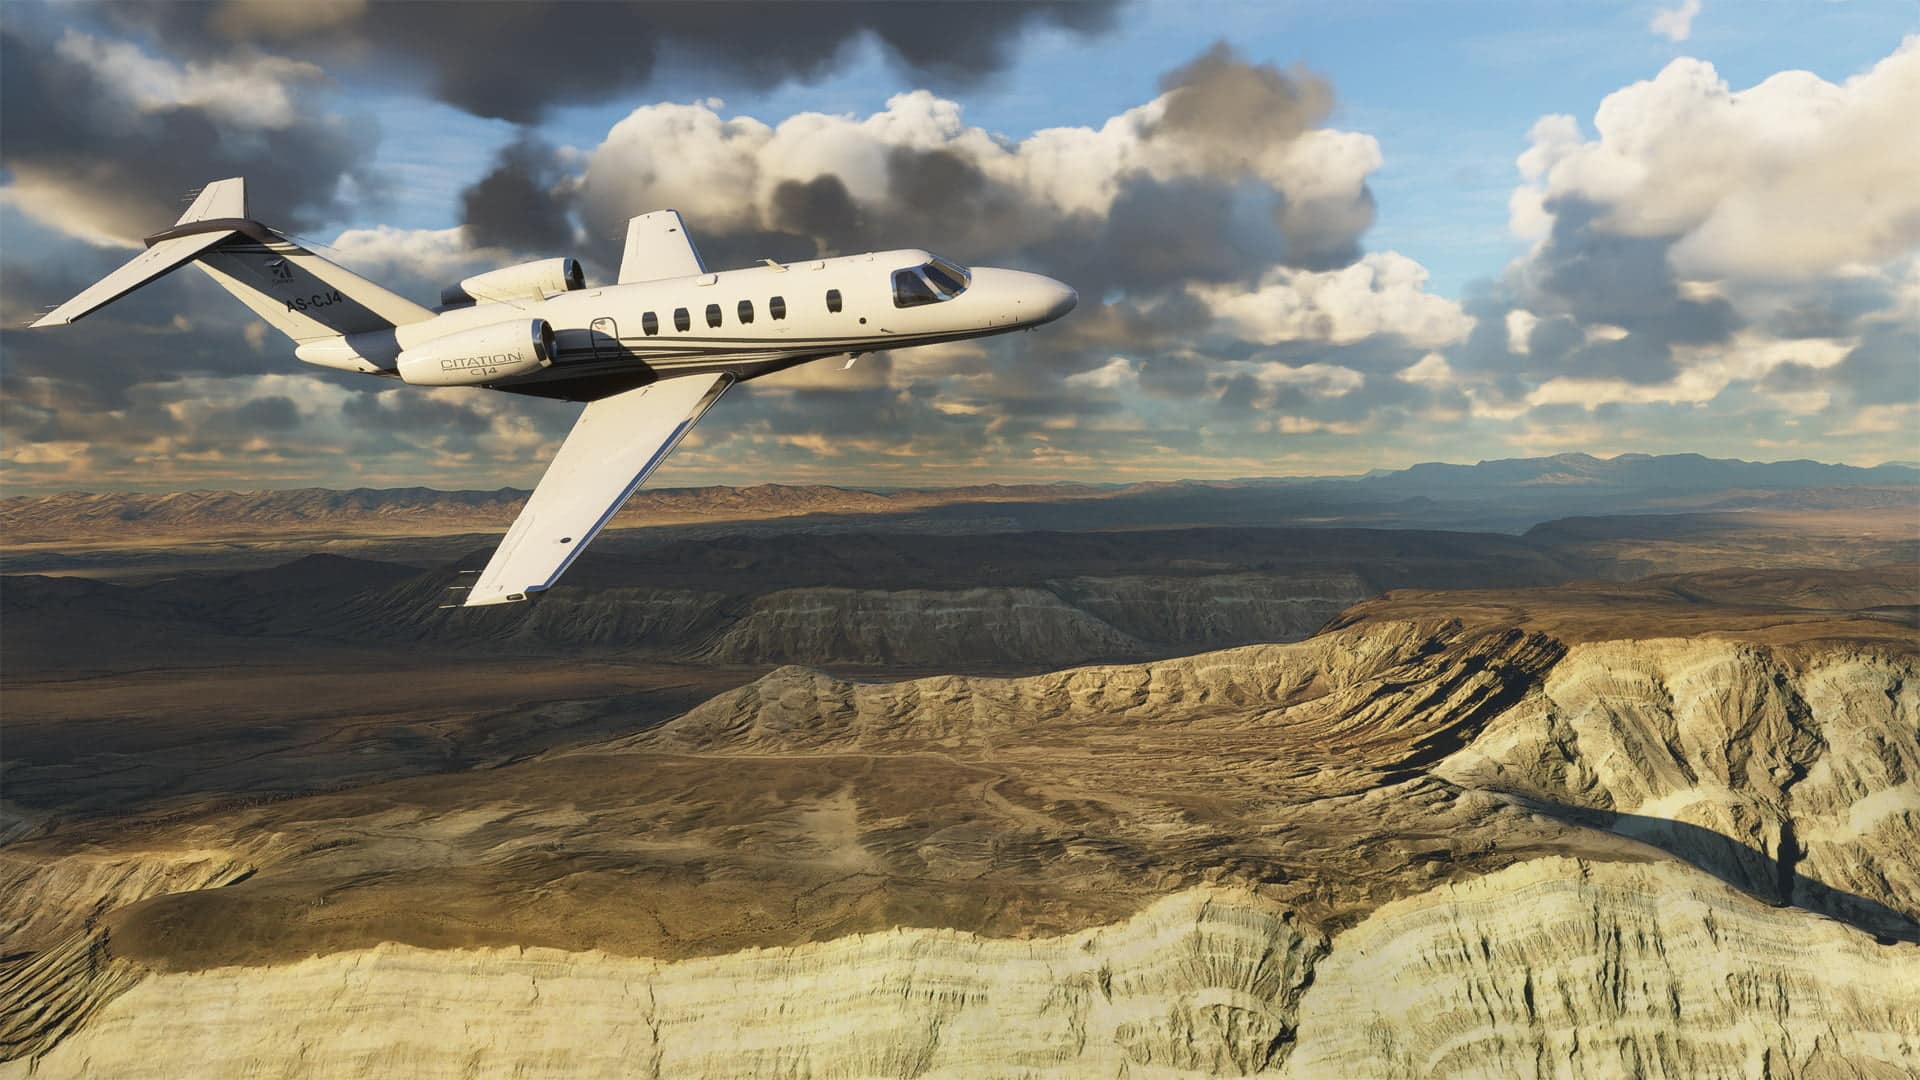 Microsoft flight simulator será lançado em agosto | 855a22b7 microsoft flight simulator 2020 38 | microsoft fechará todas as lojas físicas notícias, tecnologia